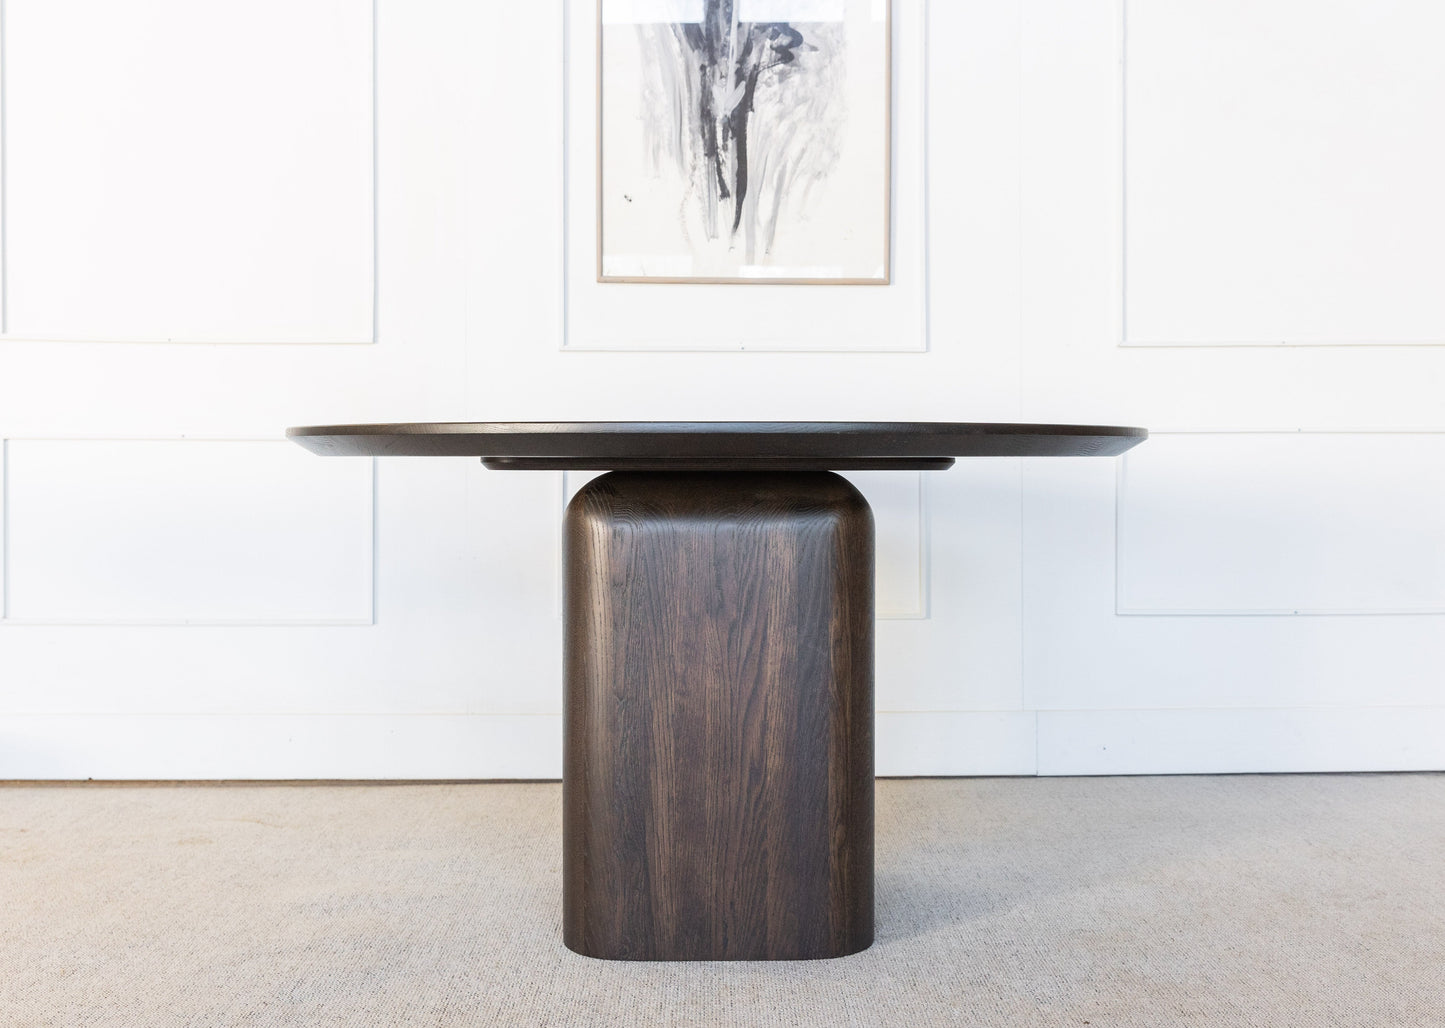 Spisebordet Lofoten ble inspirert av den vakre naturen i Lofoten. Den slanke og runde bordplaten ser visuelt lett og elegant ut. Bordets sokkel er det motsatte til bordplaten - den er massiv og kraftig. Til tross for de forskjellige proporsjonene, bordplaten og sokkelen skaper harmonisk kombinasjon. 